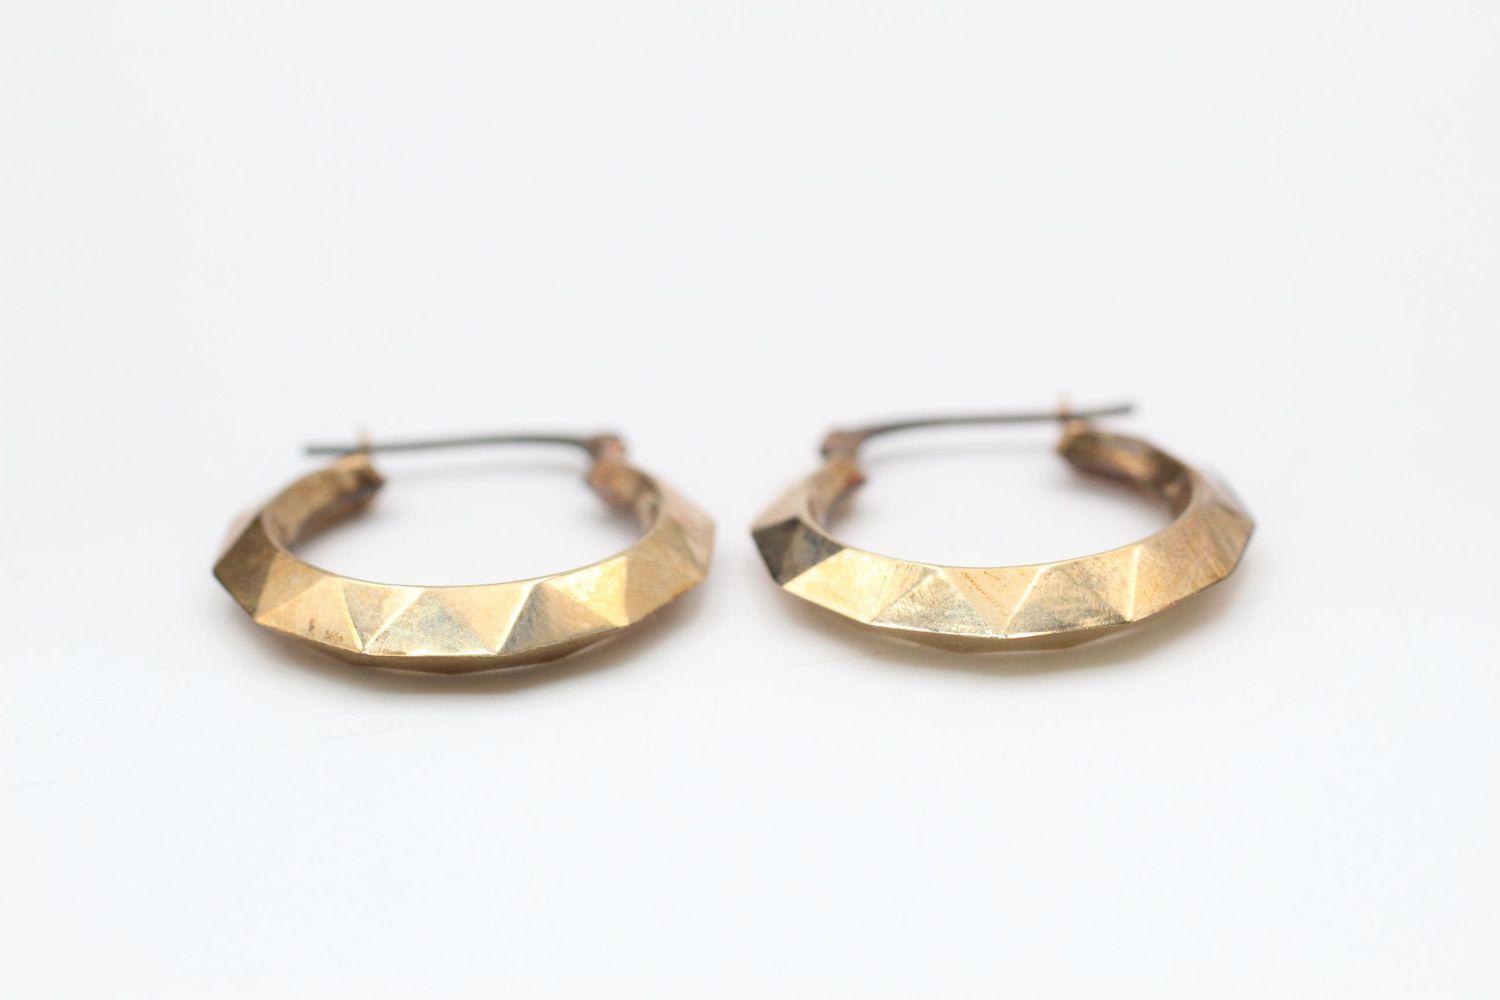 2 x 9ct gold hoop earrings 2.8 grams gross - Image 3 of 8